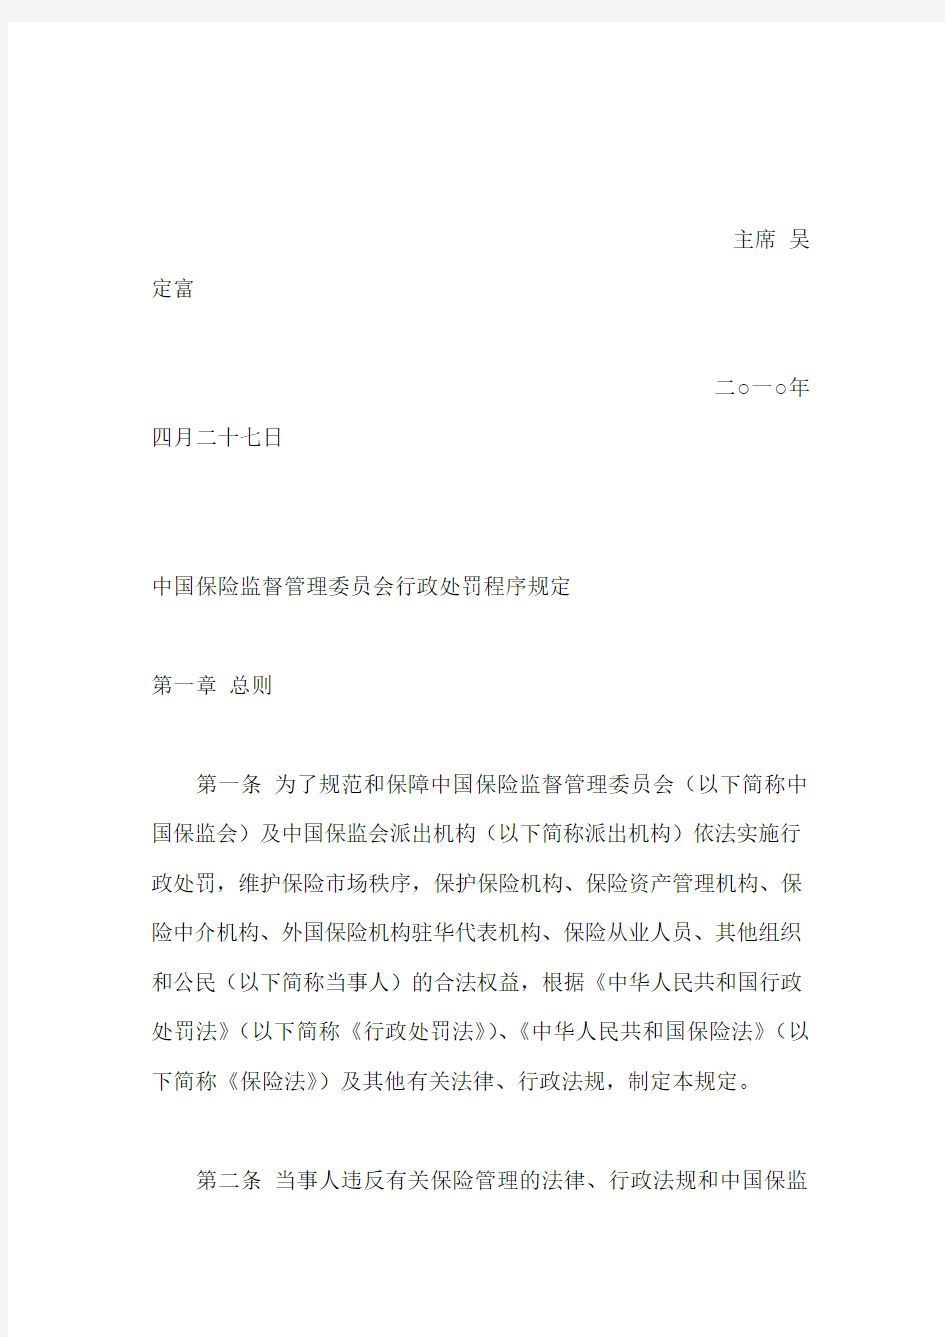 中国保险监督管理委员会行政处罚程序规定(2010)